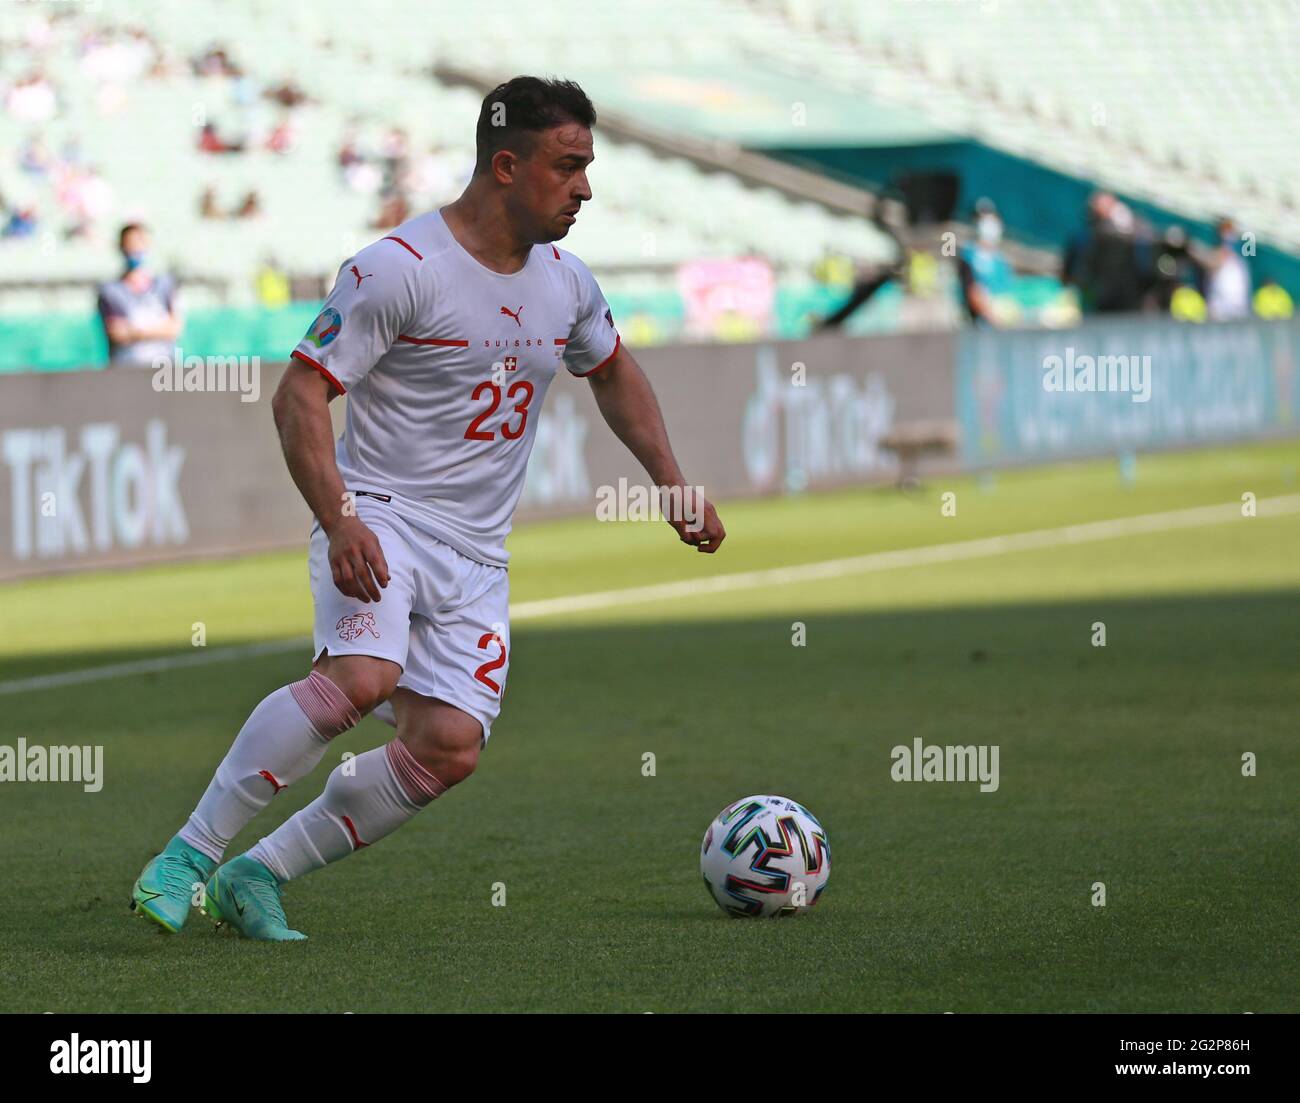 Xherdan Shaqiri della Svizzera durante la partita UEFA Euro 2020 del Gruppo A allo Stadio Olimpico di Baku, Azerbaigian. Data immagine: Sabato 12 giugno 2021. Foto Stock